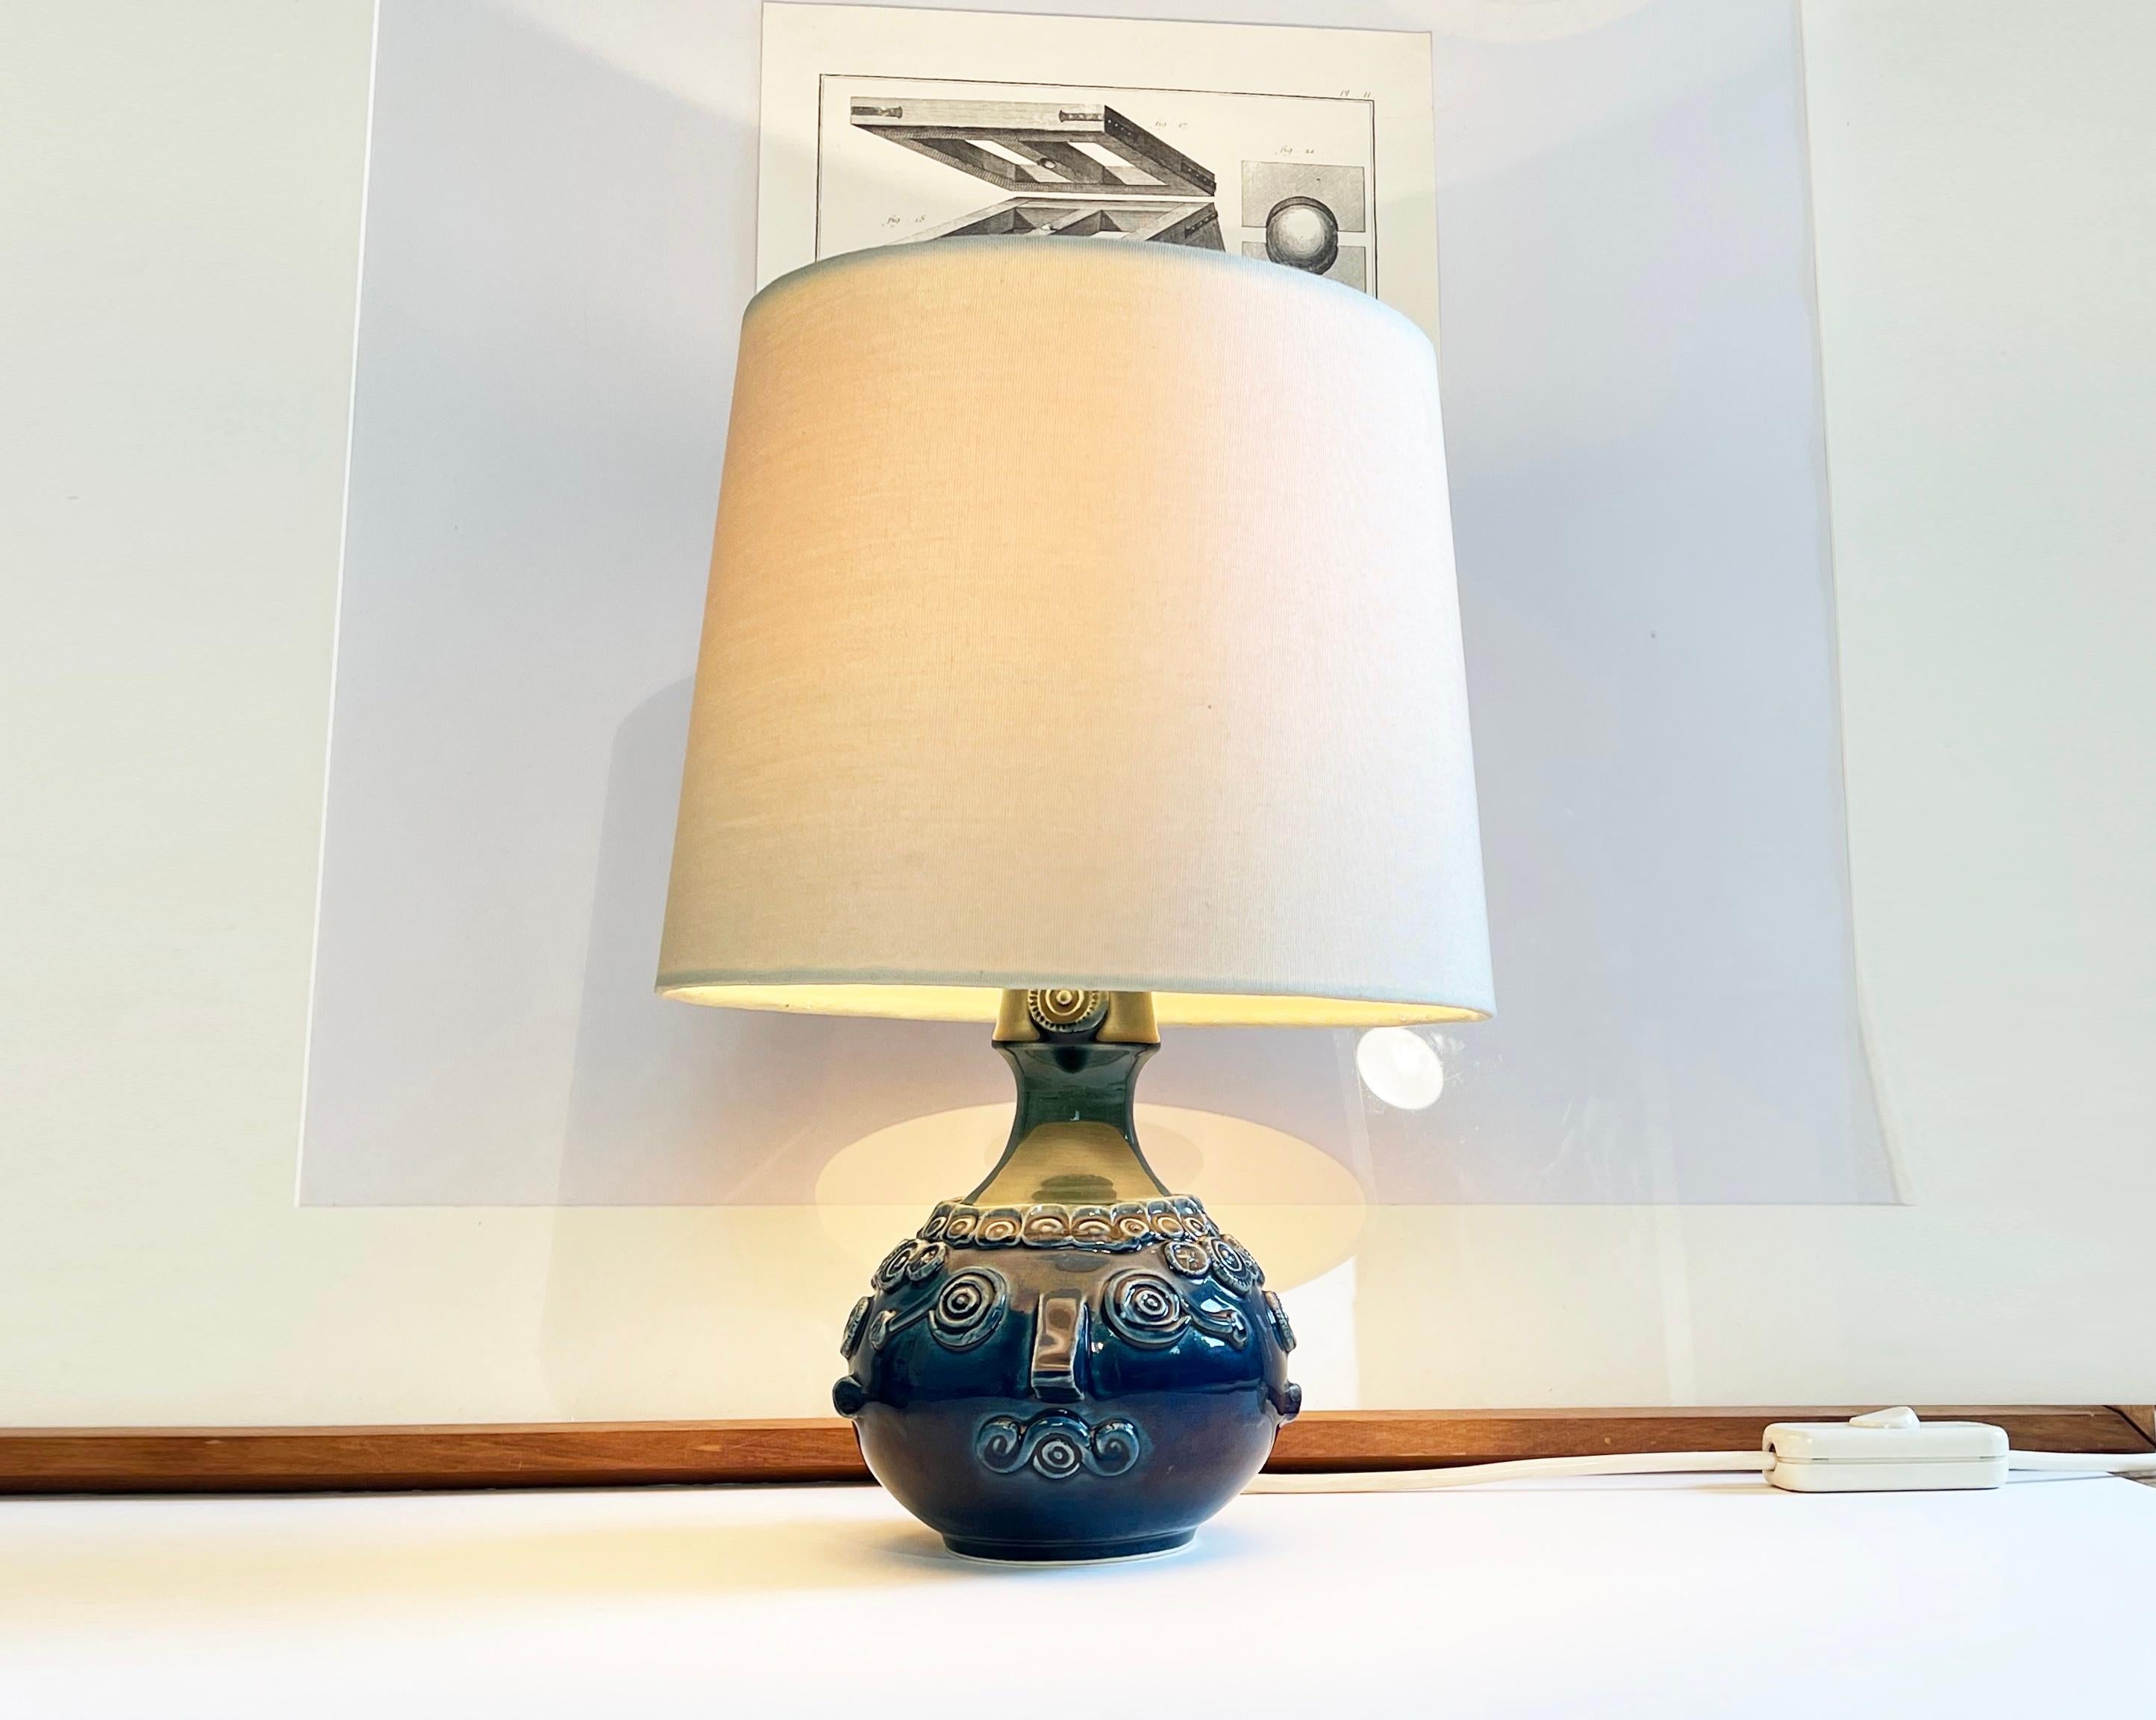 Ausdrucksstarke skandinavische Kunstleuchte von Bjørn Wiinblad für Rosenthals 'Studio Line' Kollektion.
Der Sockel ist aus Keramik mit einer blauen Glasur, die nach oben hin grünlich schimmert.
Das Design ist einfach wunderschön in Form eines Kopfes